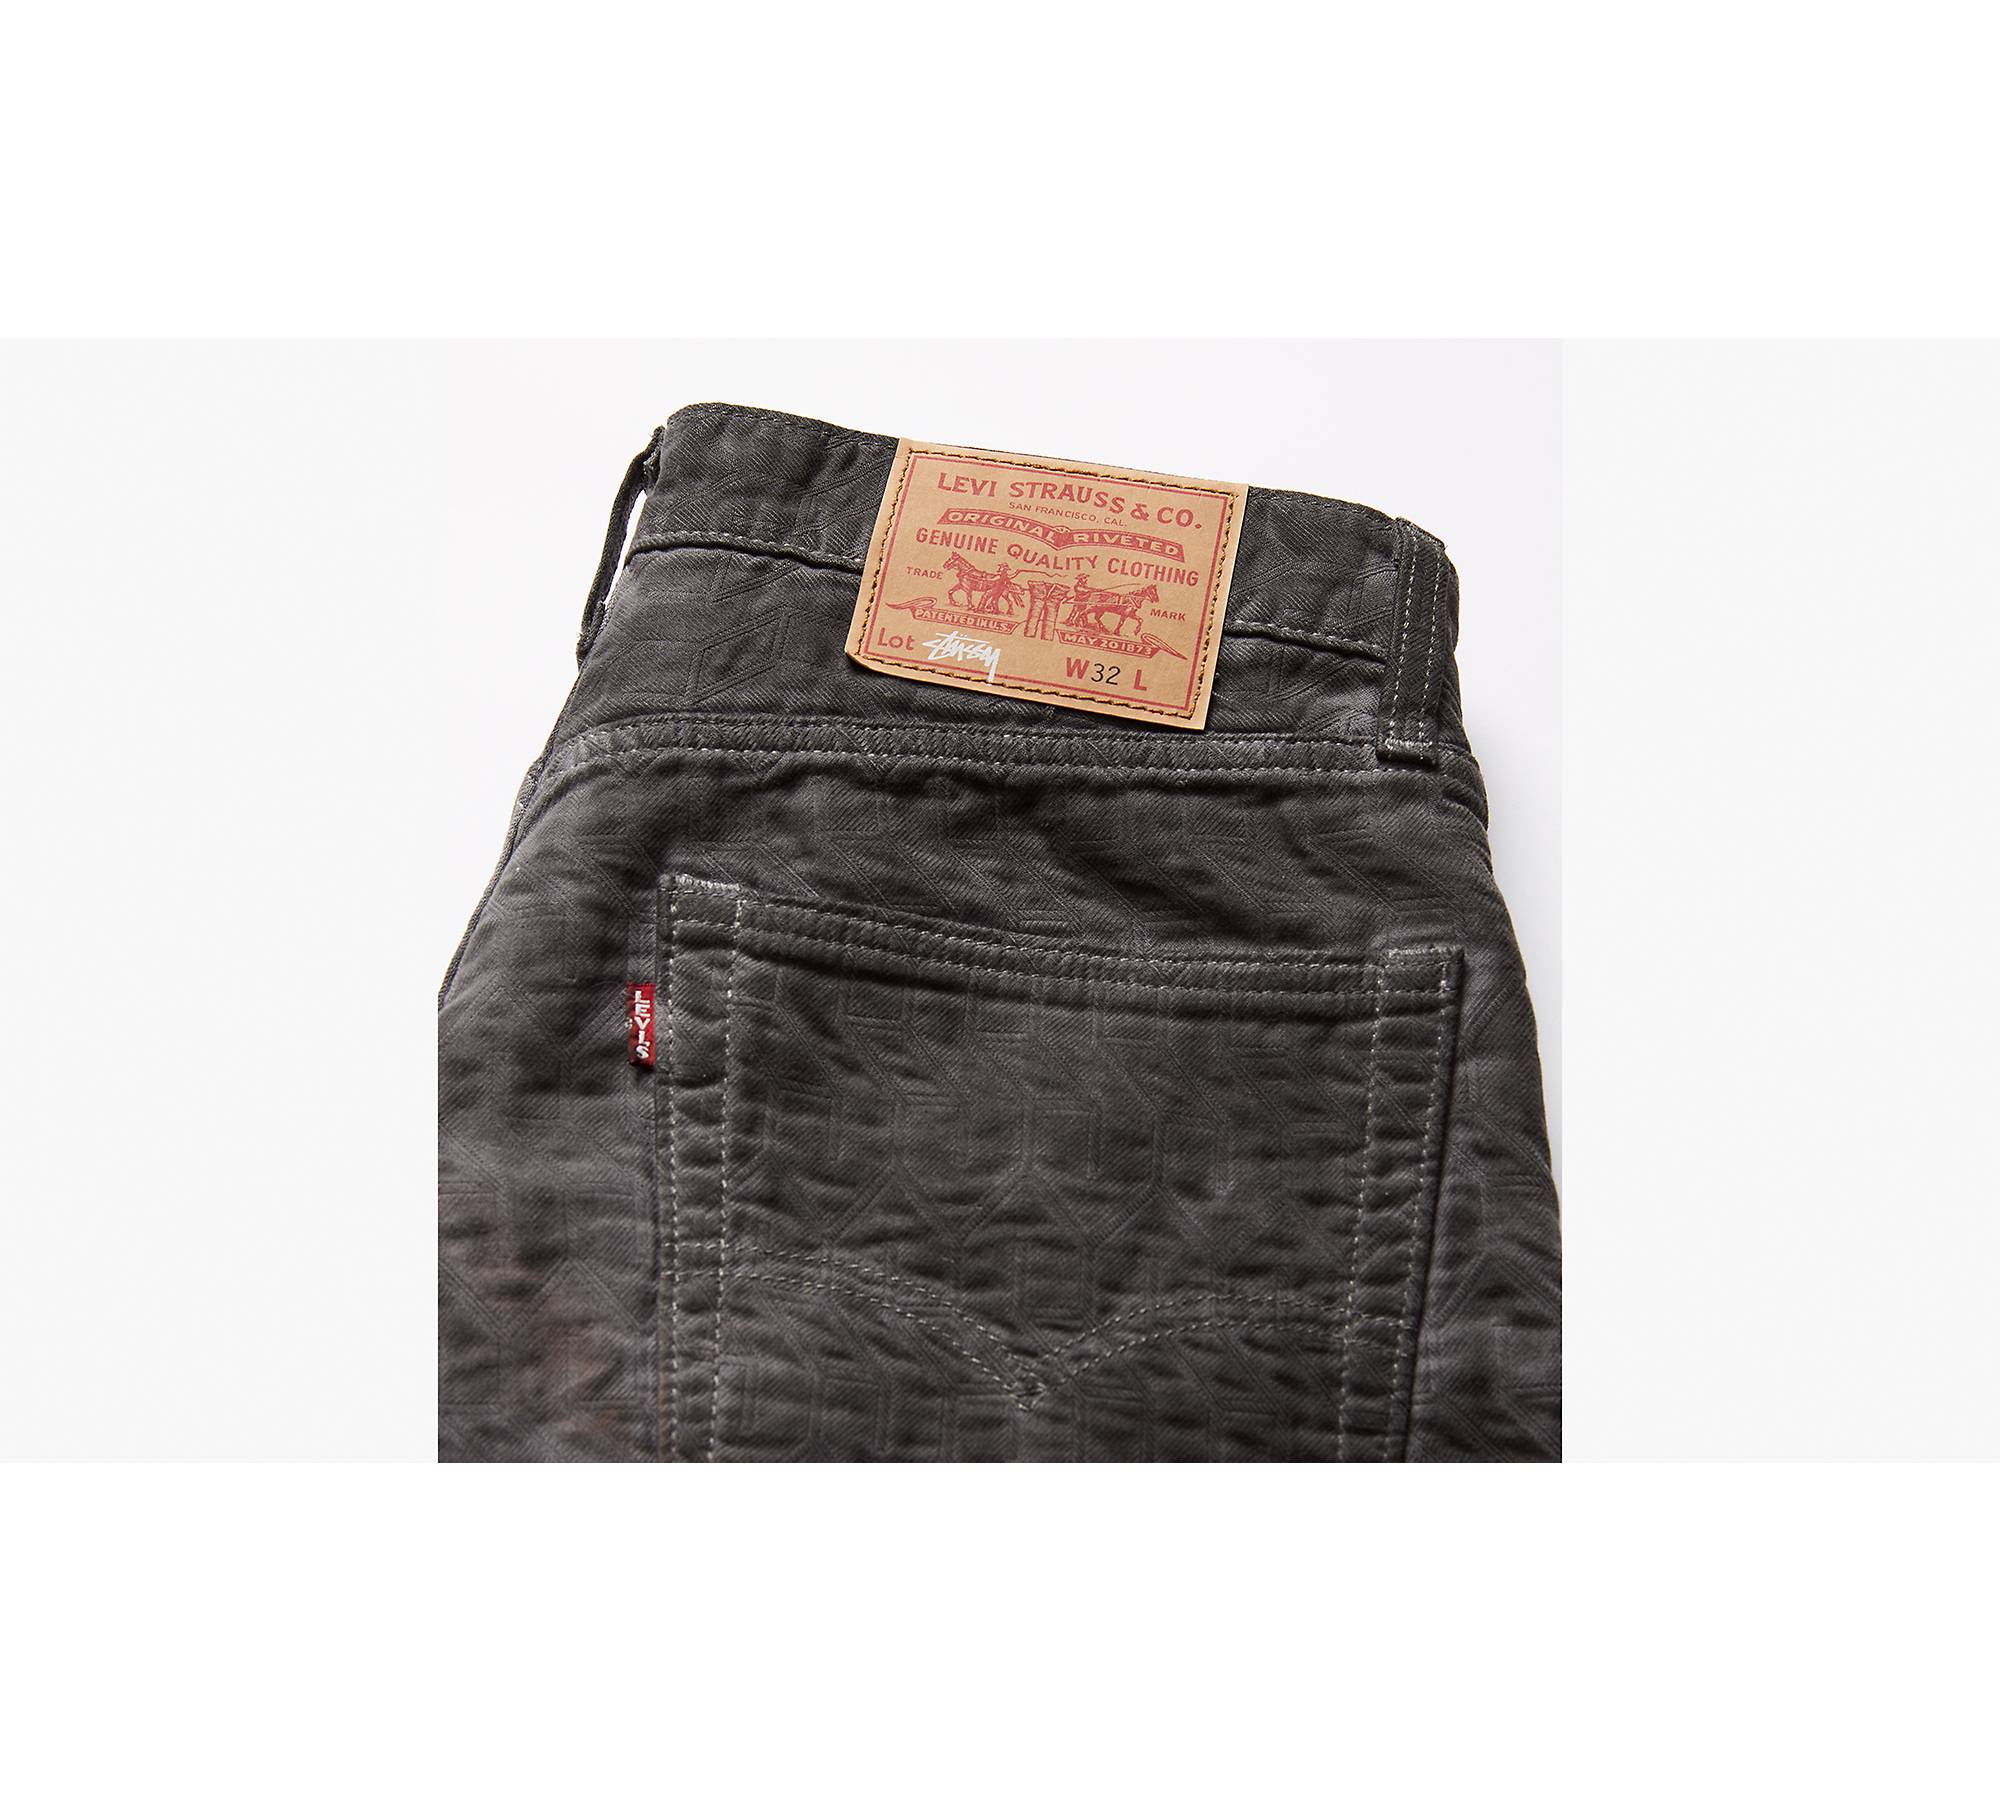 Stussy & Levi's® Jacquard Jeans - Black | Levi's® GB